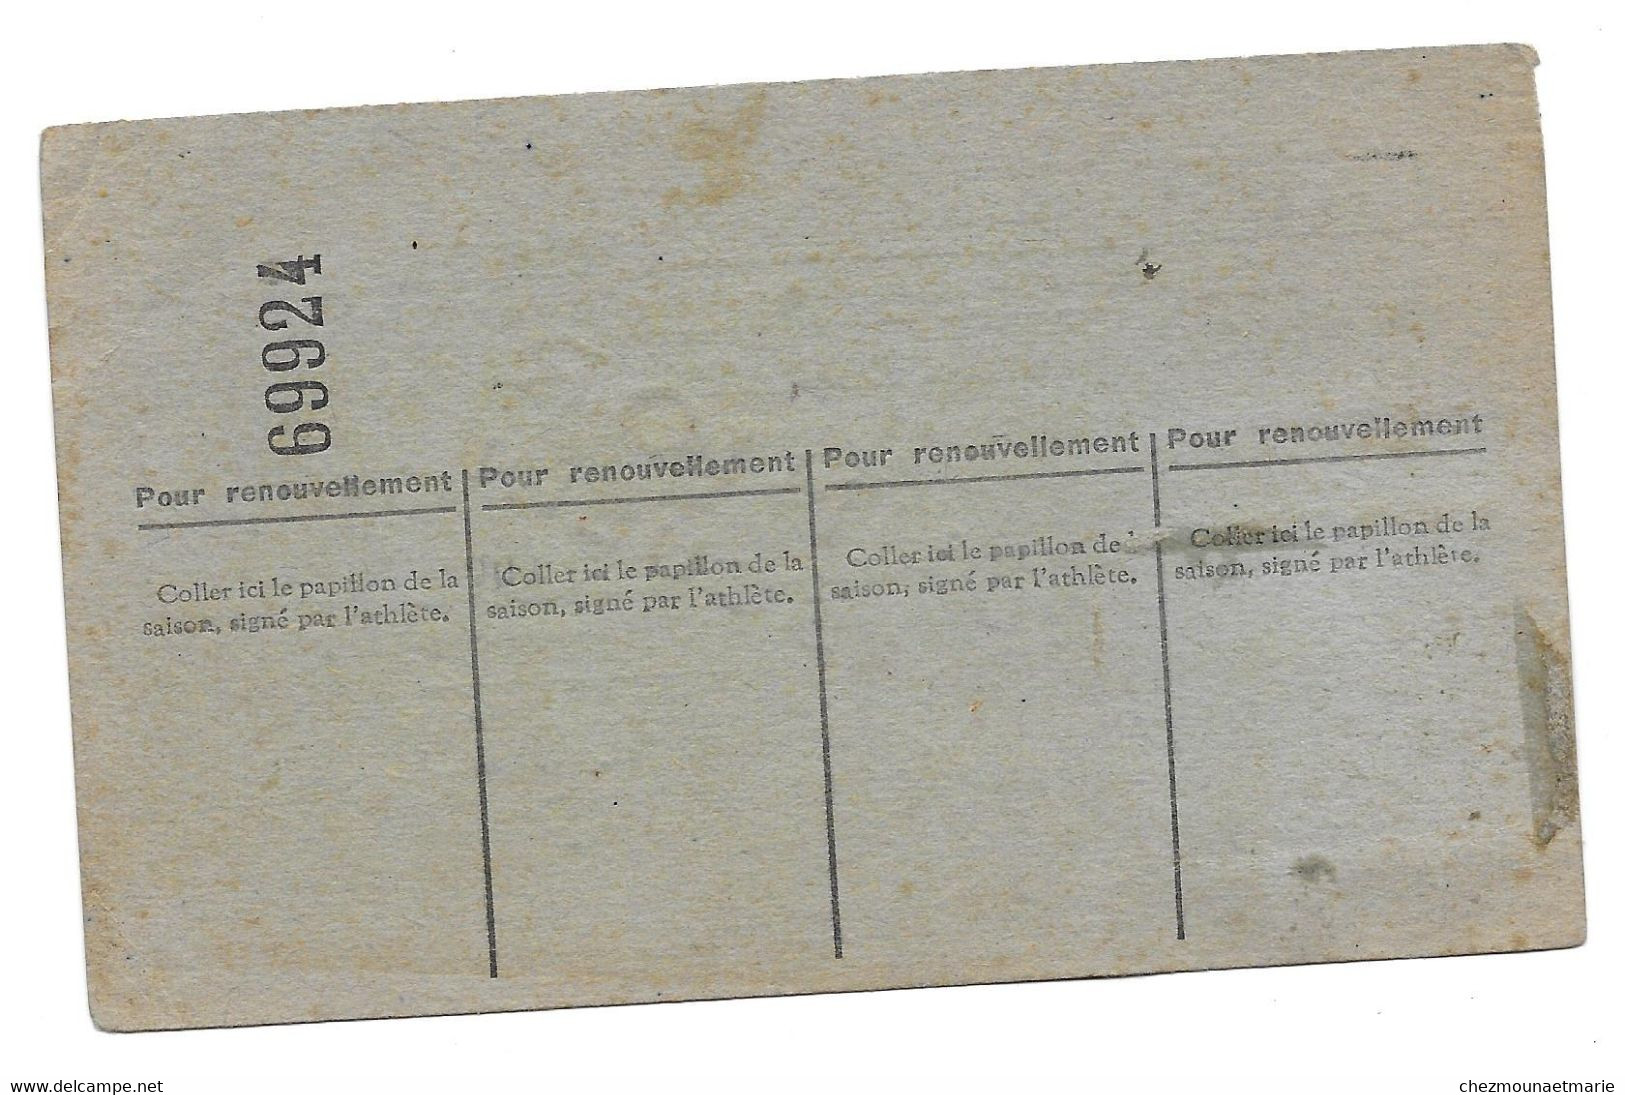 1946 ESPERANCE LEDONIENNE LONS LE SAUNIER FAIVRE ANDRE - CARTE LICENCE ATHLETISME - Historische Dokumente